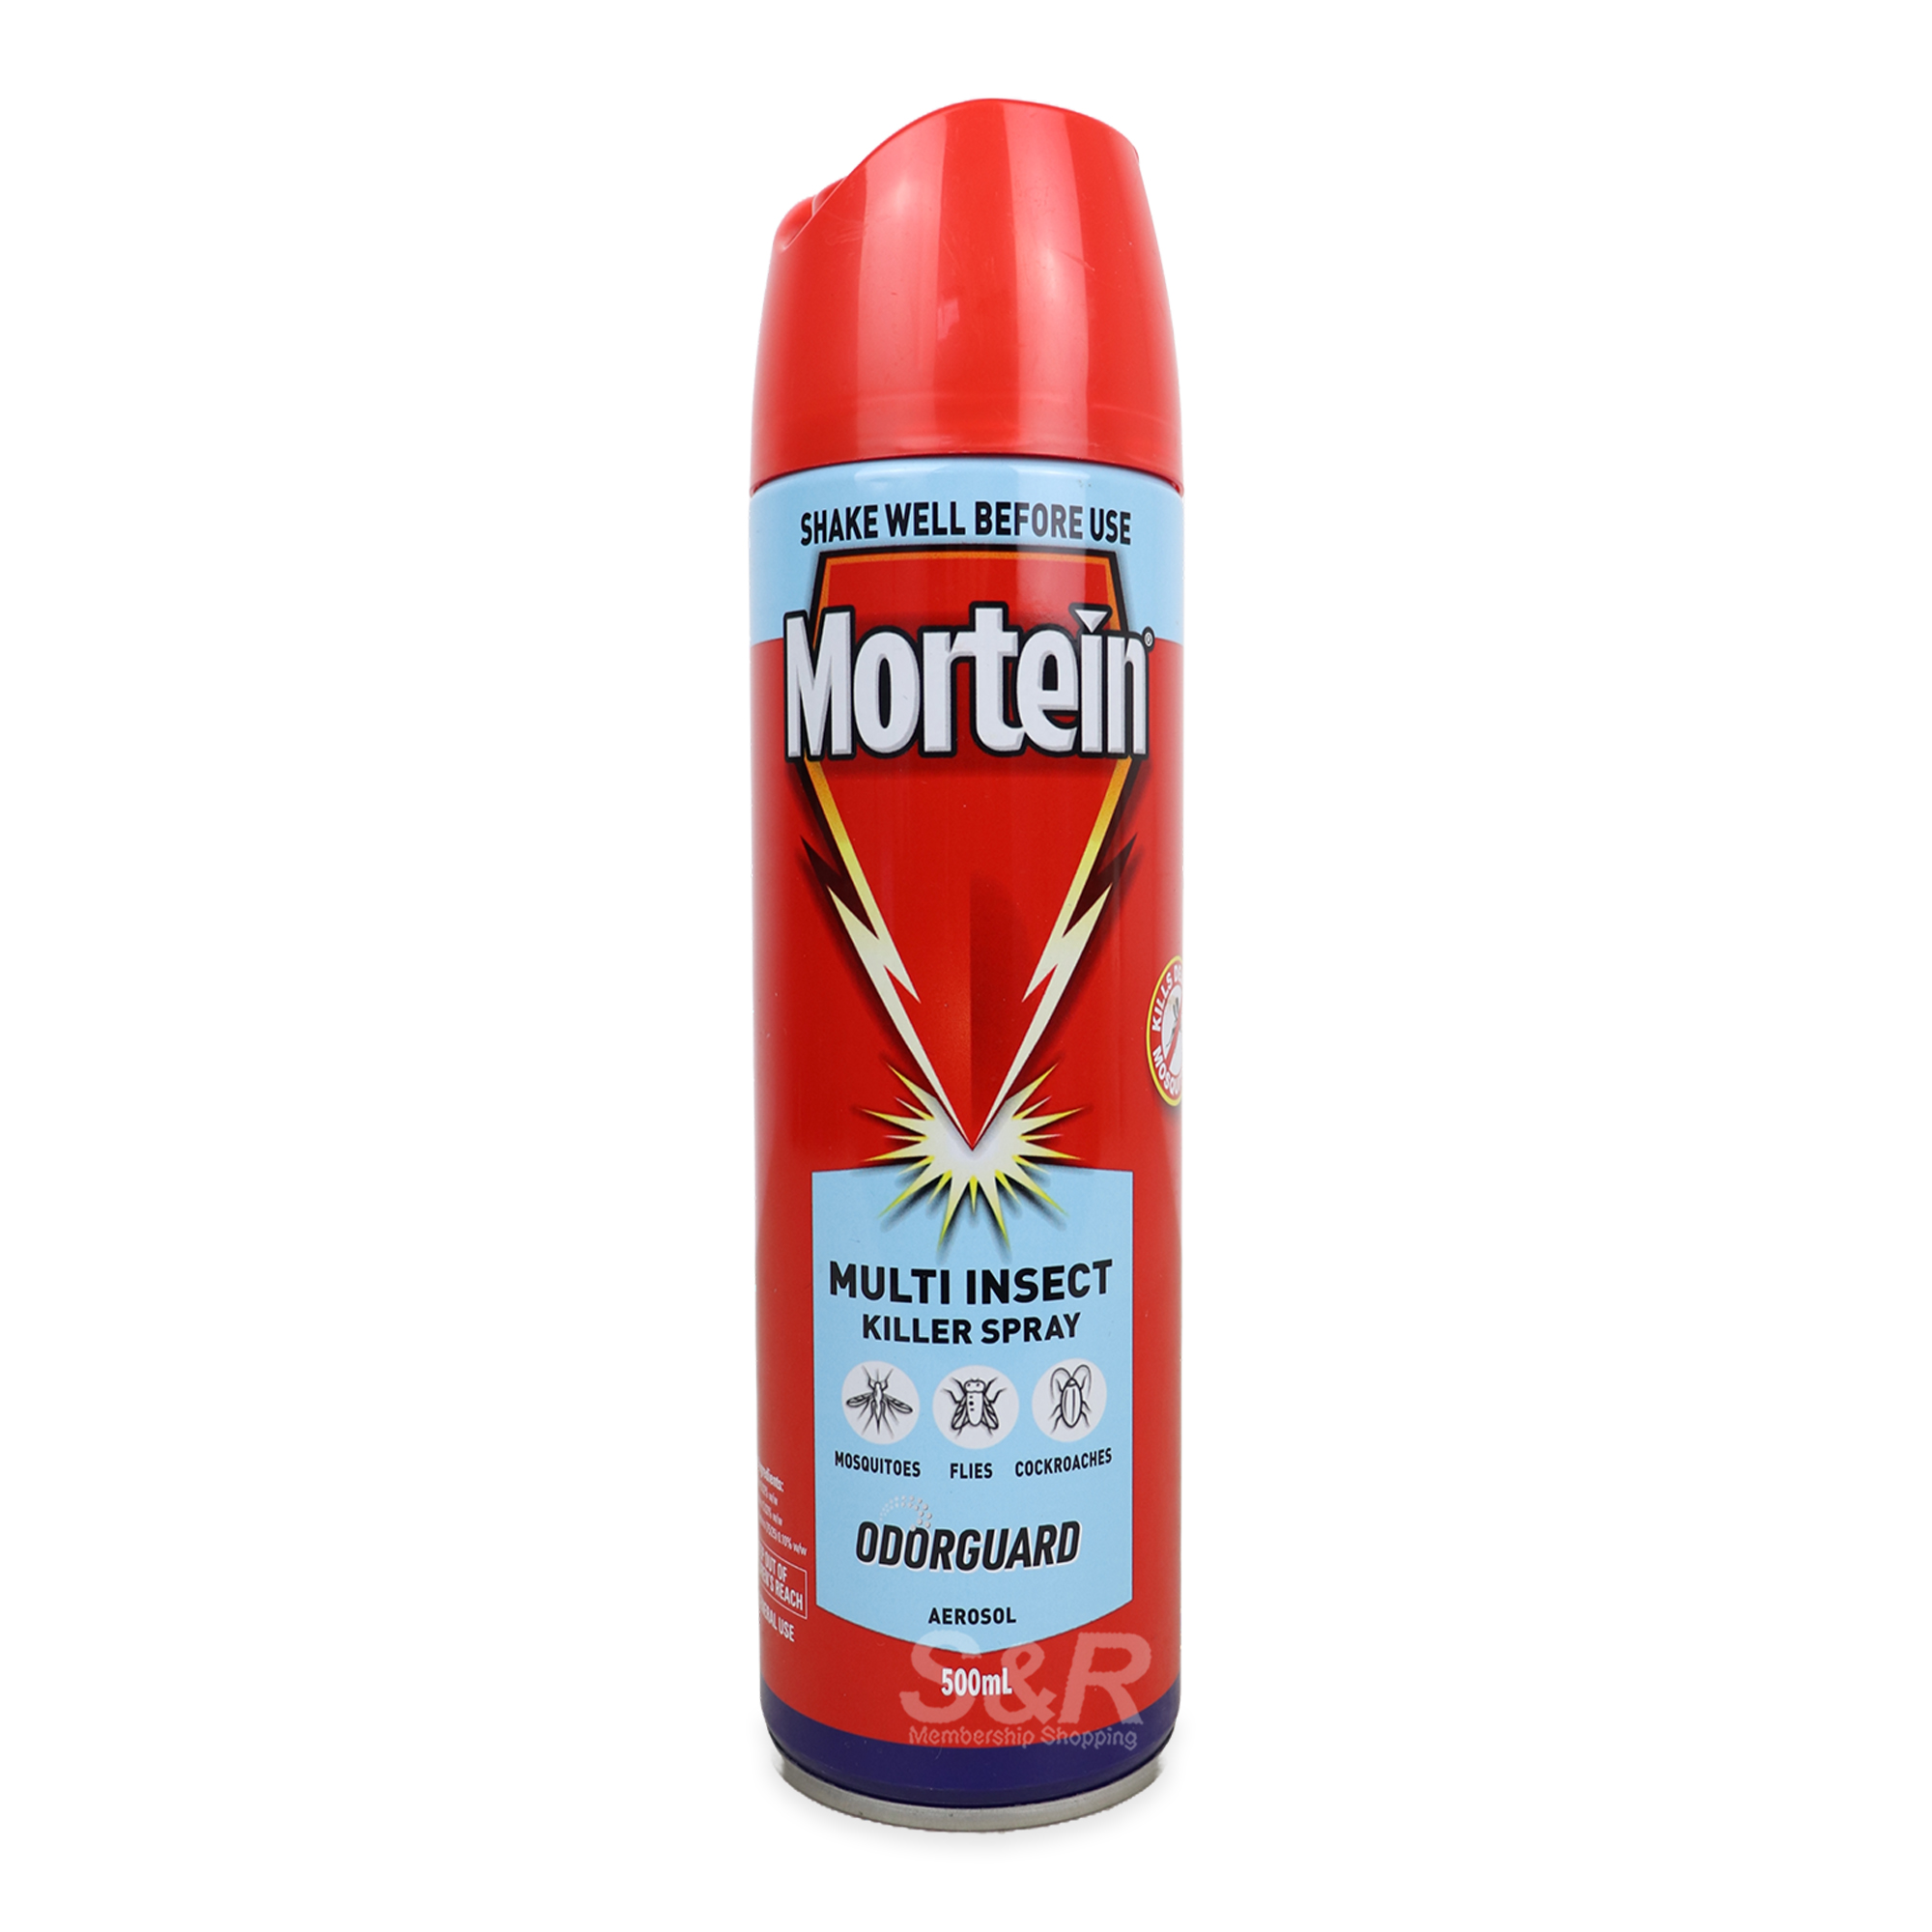 Mortein Odorguard Multi Insect Killer Spray 500mL